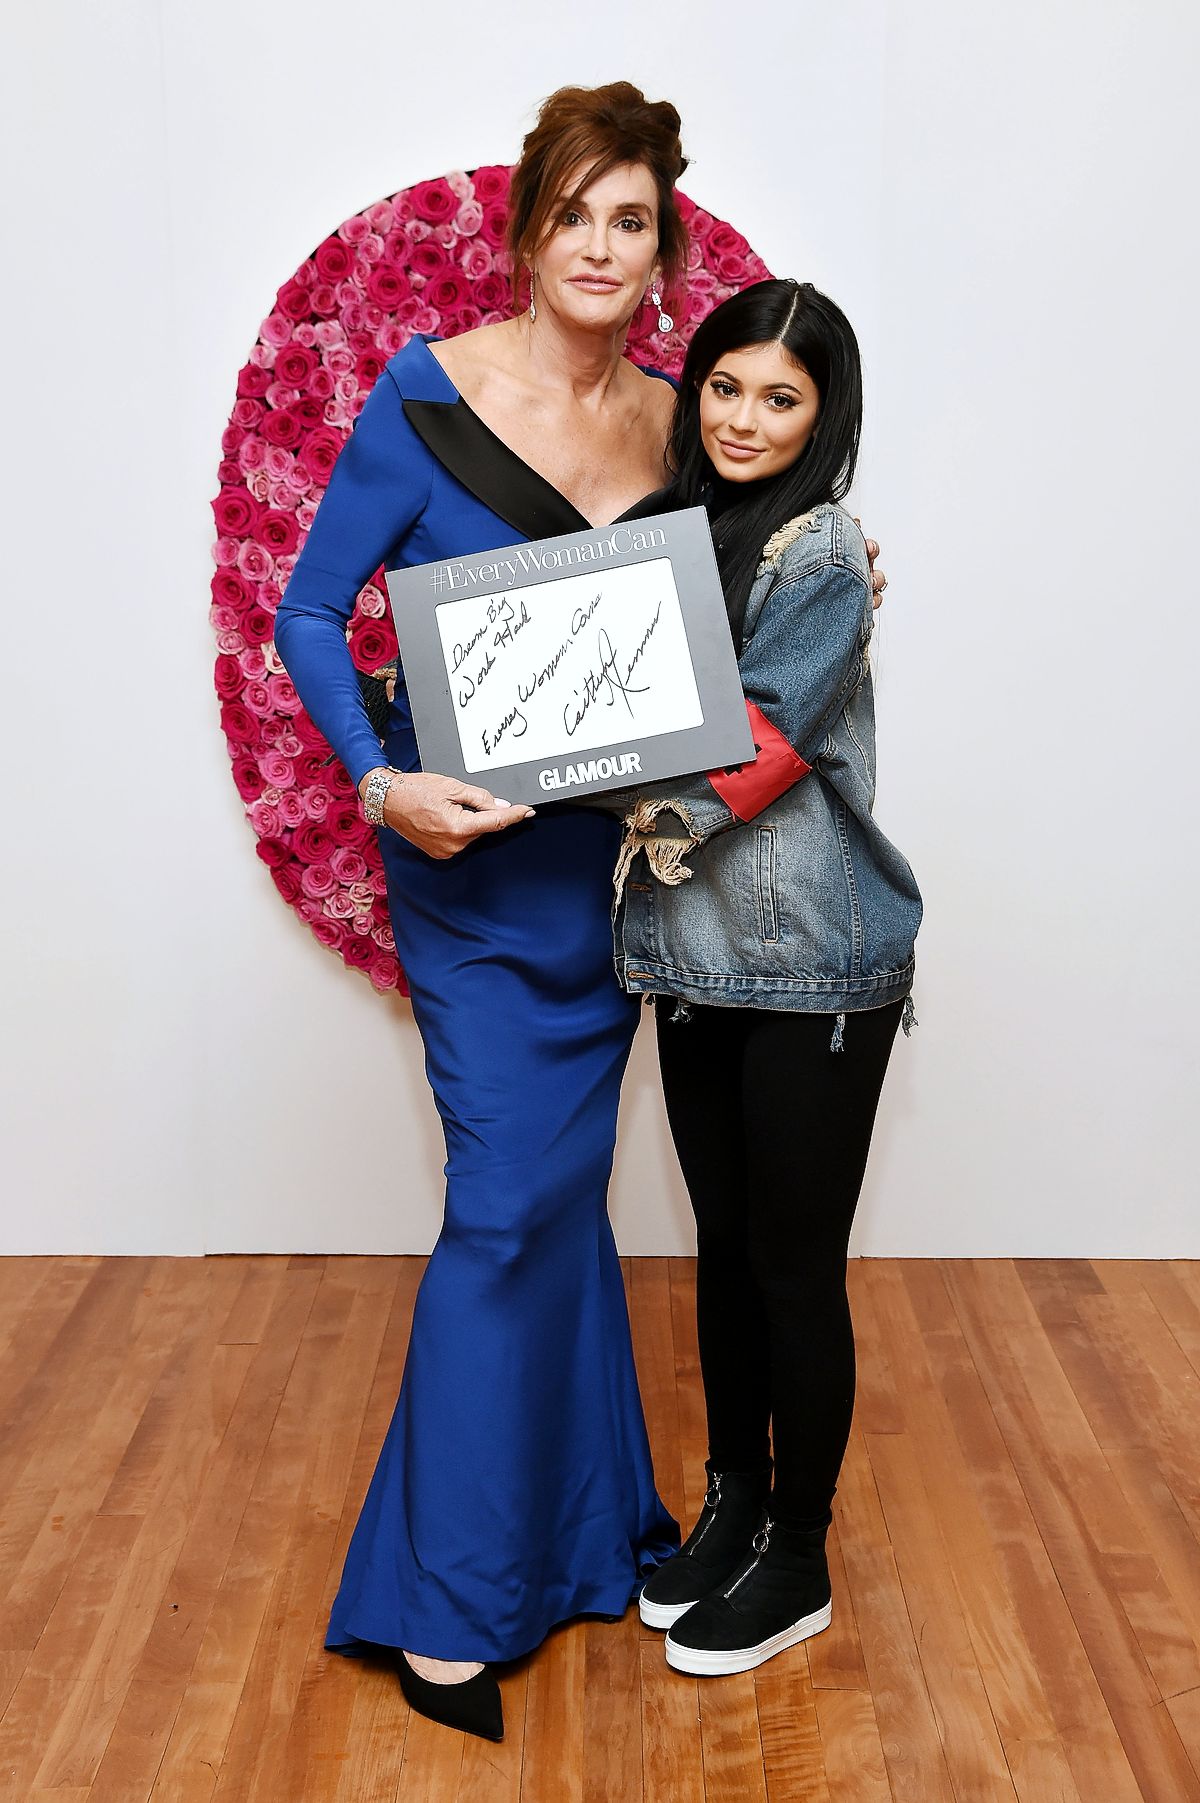 Кейтлин Дженнер и Кайли Дженнер за кулисами Glamour Women of the Year 2015 в Нью-Йорке, 9 ноября 2015 г.